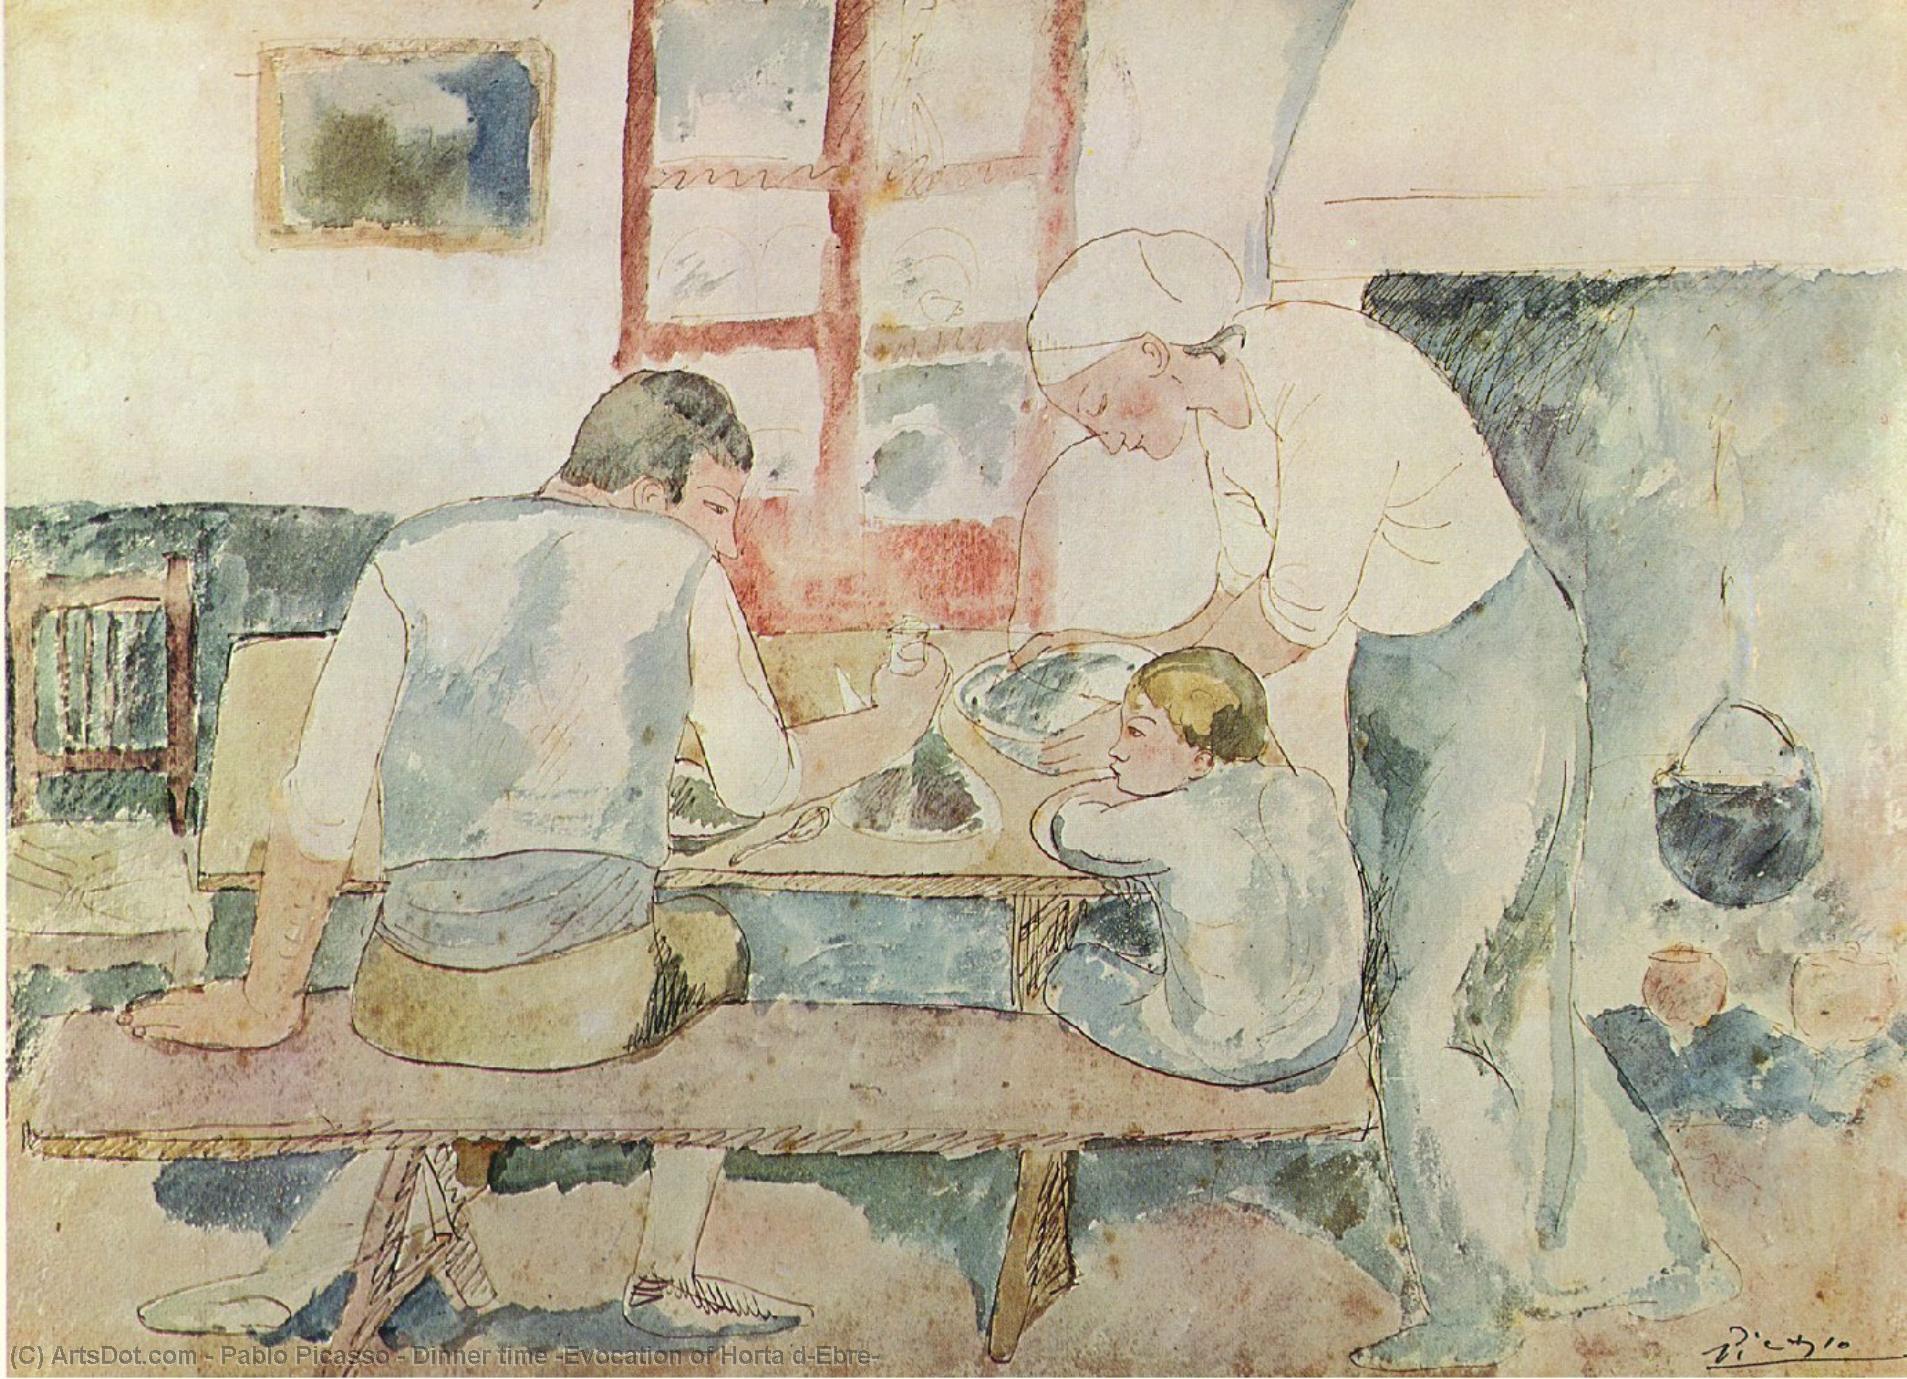 Wikioo.org - Bách khoa toàn thư về mỹ thuật - Vẽ tranh, Tác phẩm nghệ thuật Pablo Picasso - Dinner time (Evocation of Horta d'Ebre)